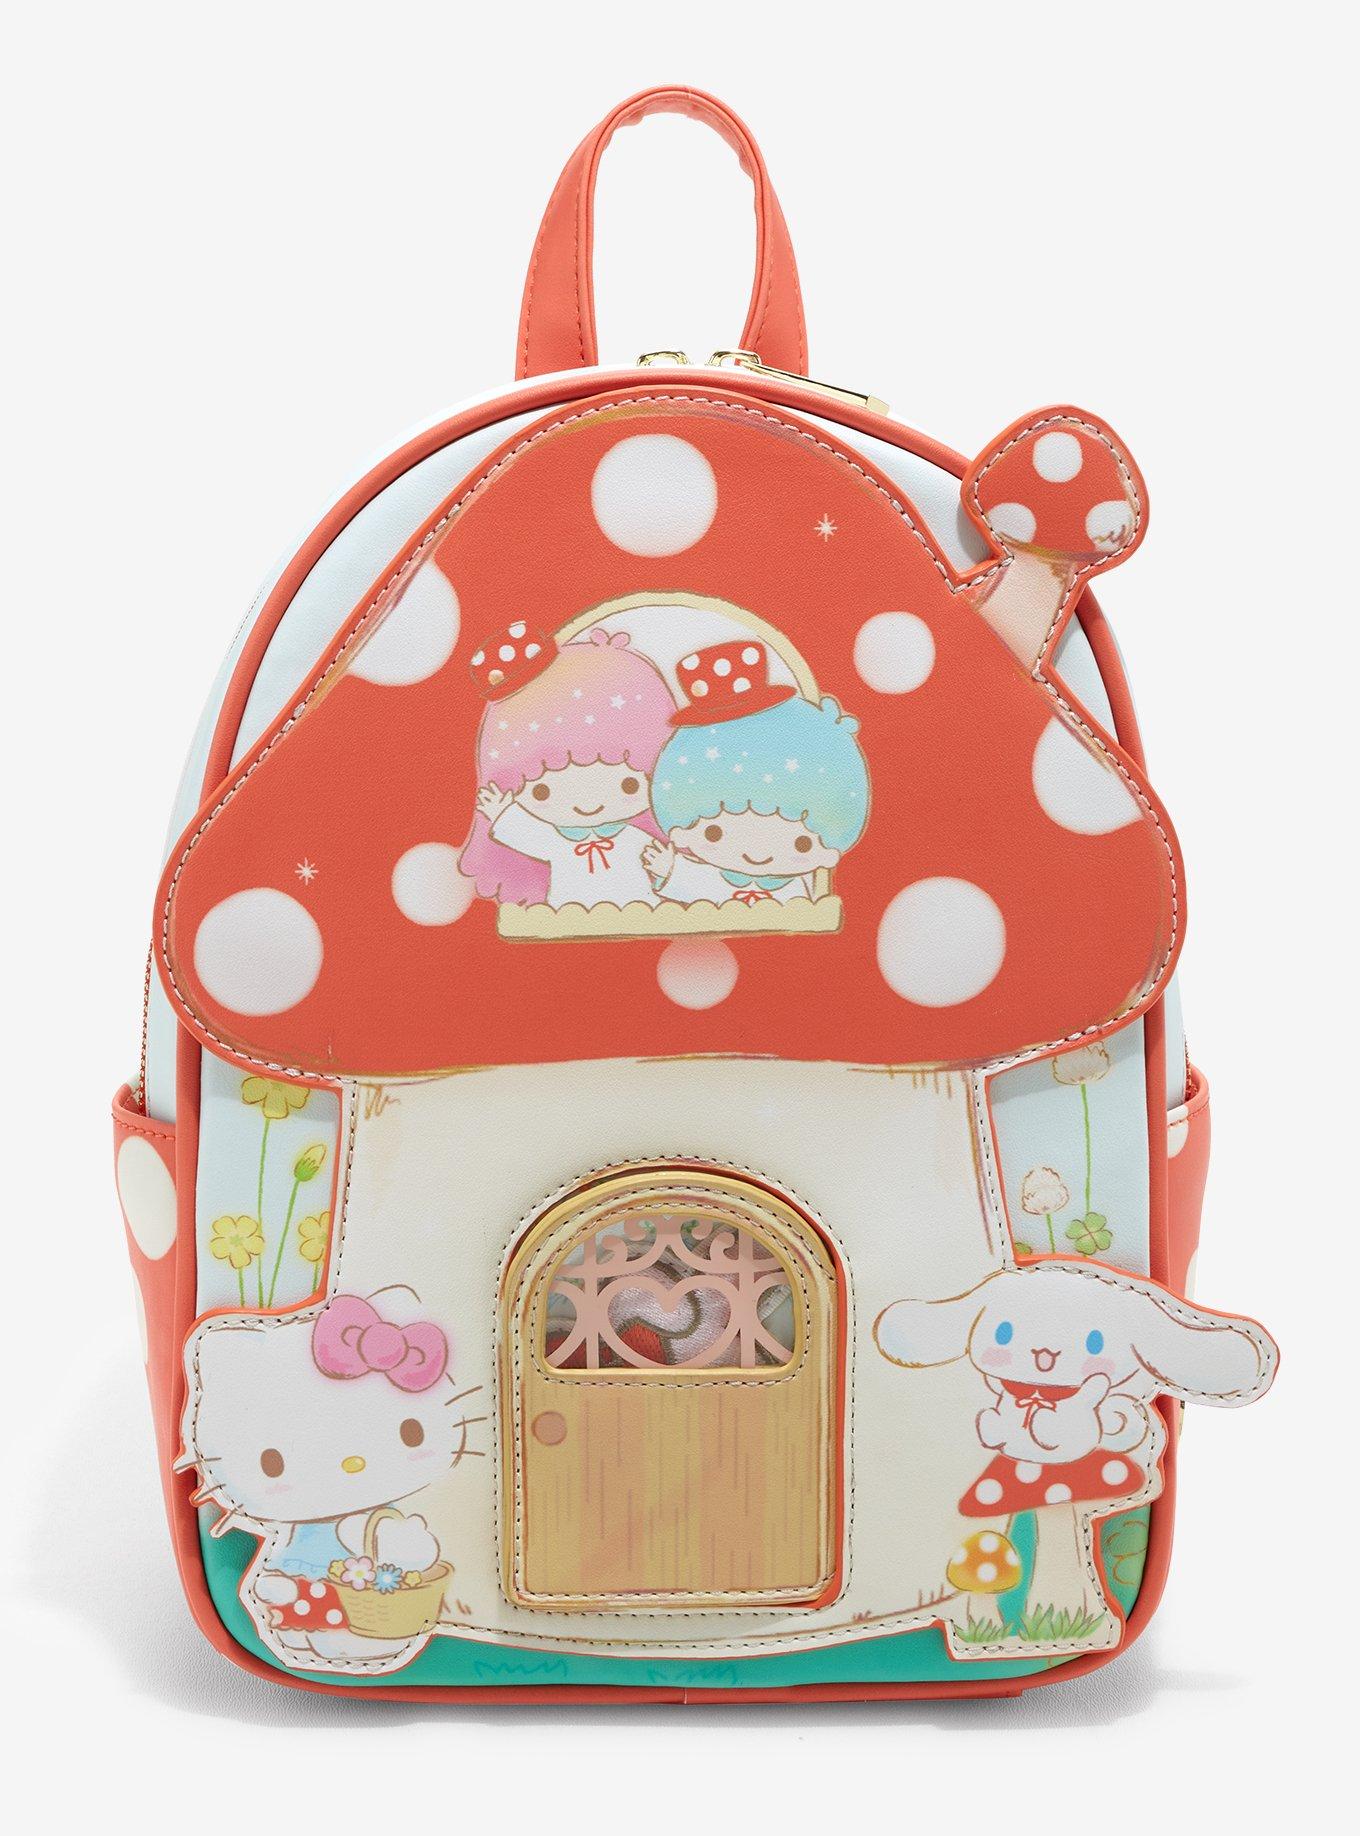 Cinnamoroll Gift Bag for Kids Cinnamoroll 8-piece Mystery Gift Set Basket  Goodie Bag Birthday Christmas Sanrio 